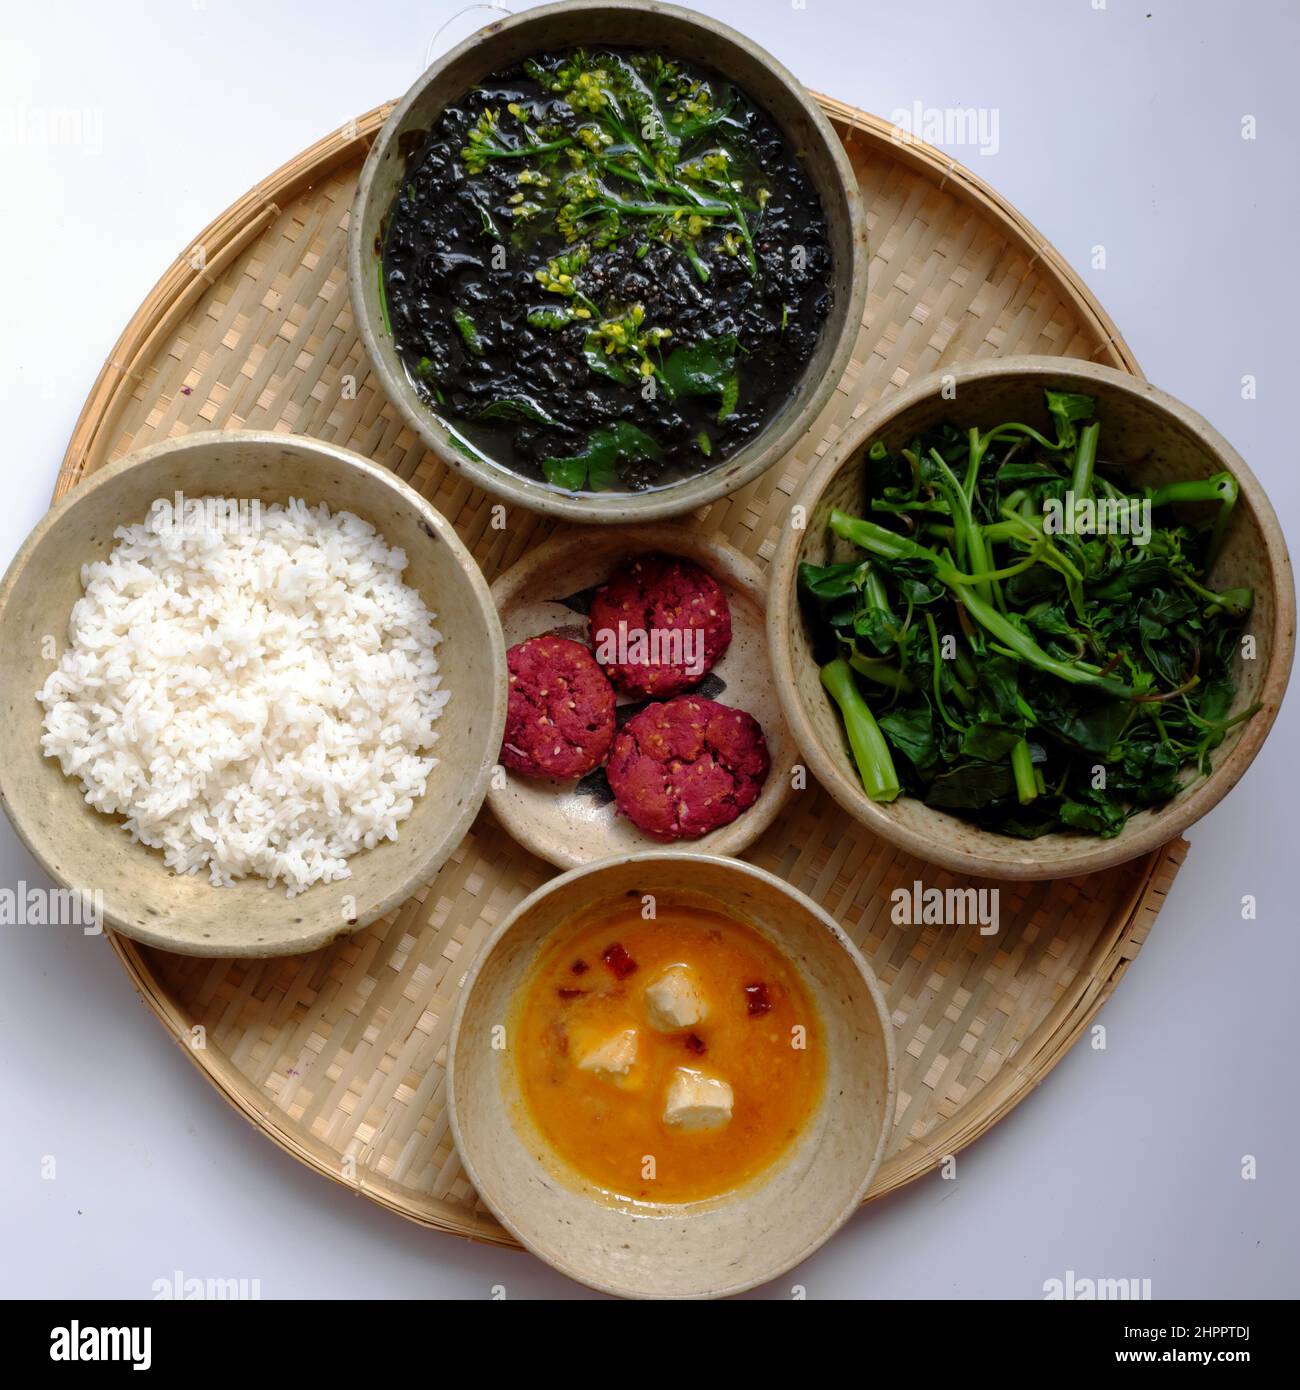 Vue de dessus cuisine vietnamienne pour un repas de famille quotidien, plateau de repas végétalien avec soupe d'algues végétales, épinards bouillis avec tofu, menu sans viande bon pour Banque D'Images